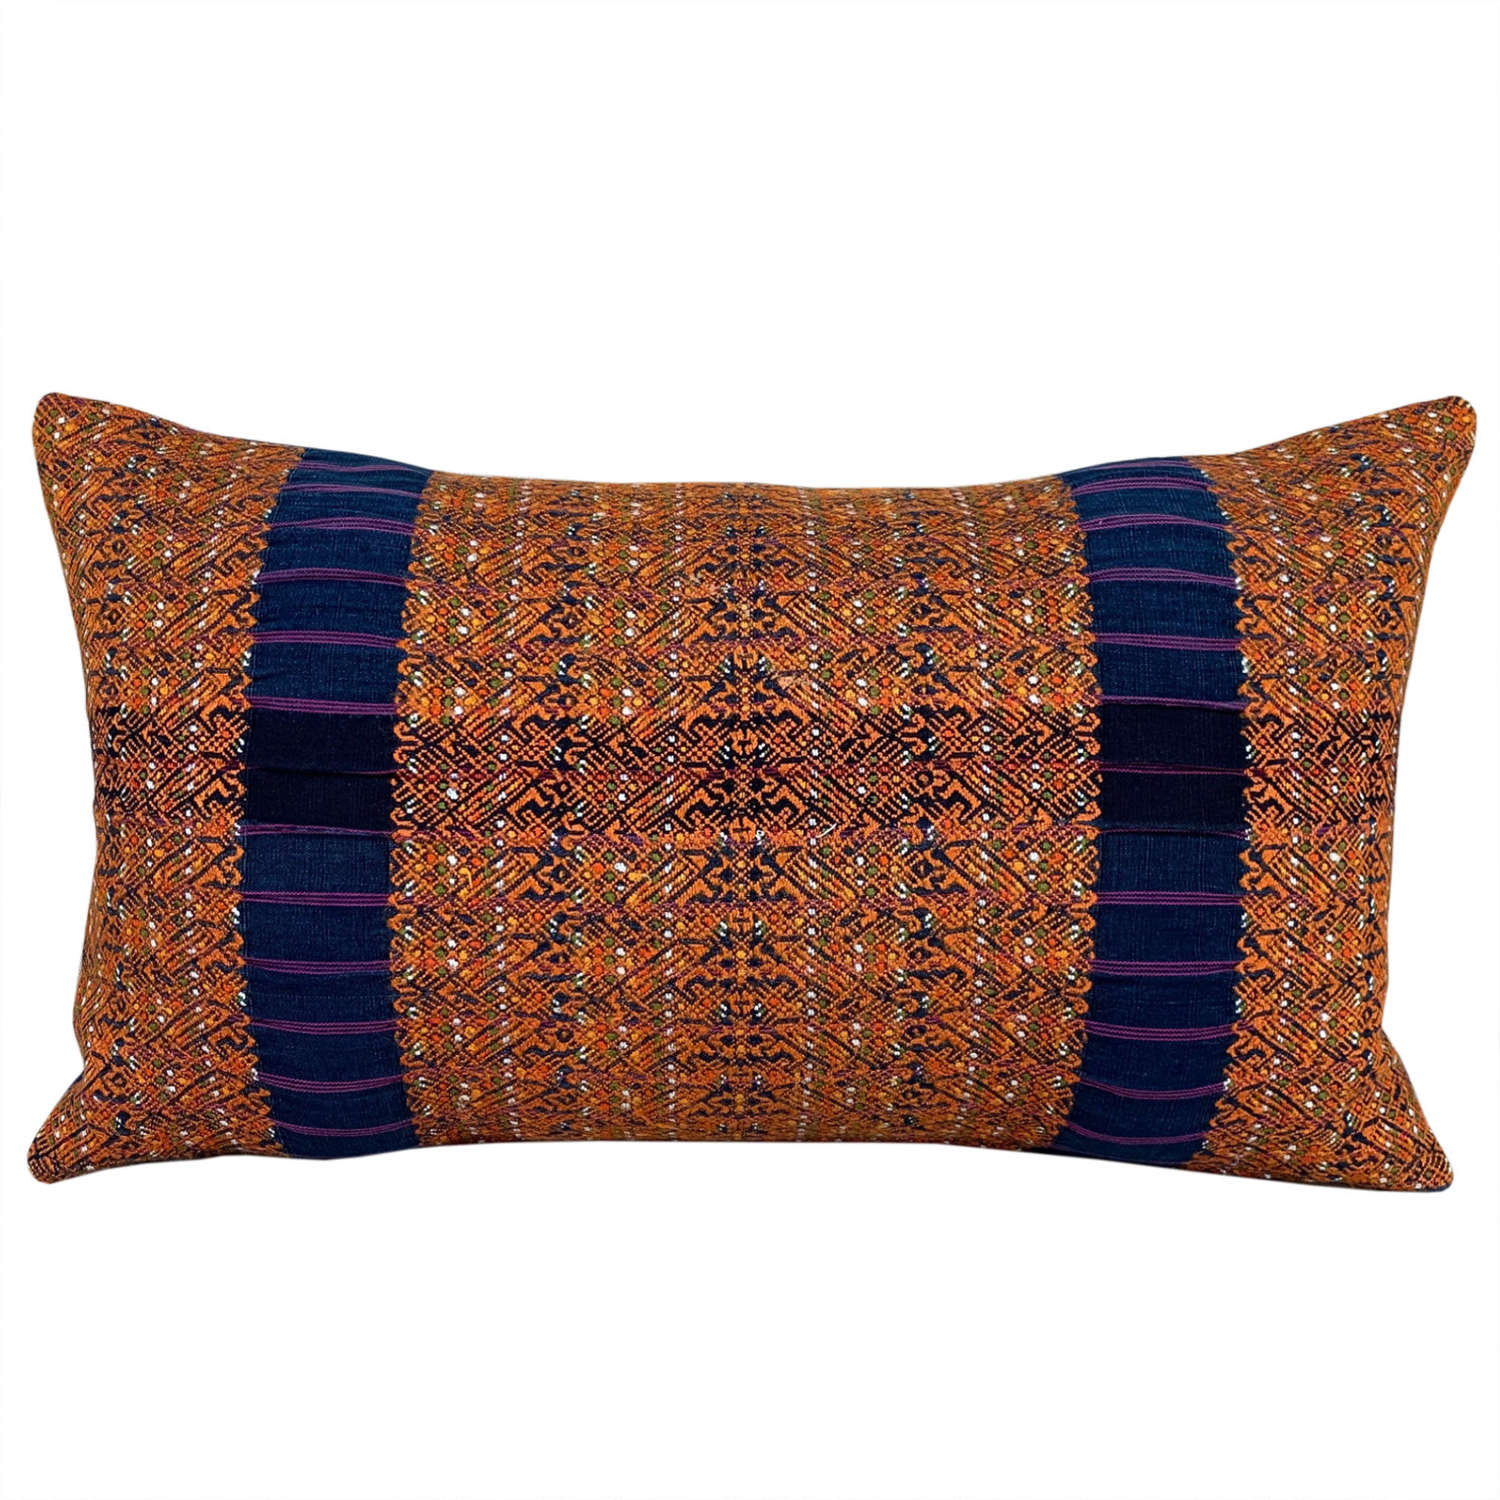 Huipil cushions, indigo and orange